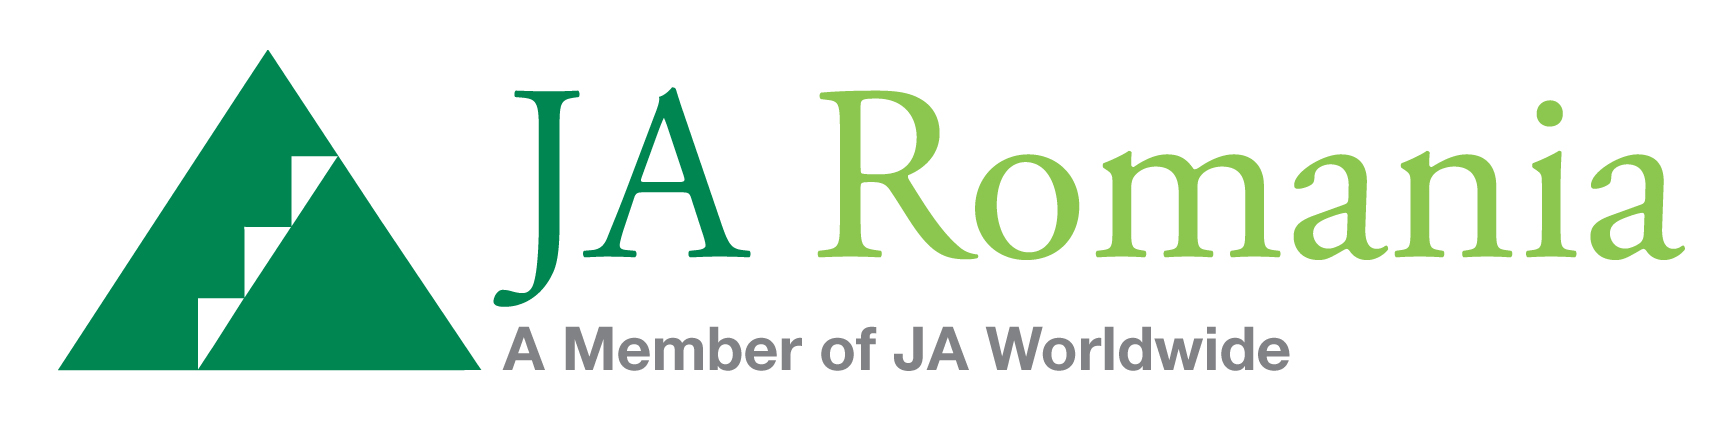 Logo-JA-Romania-2015.jpg